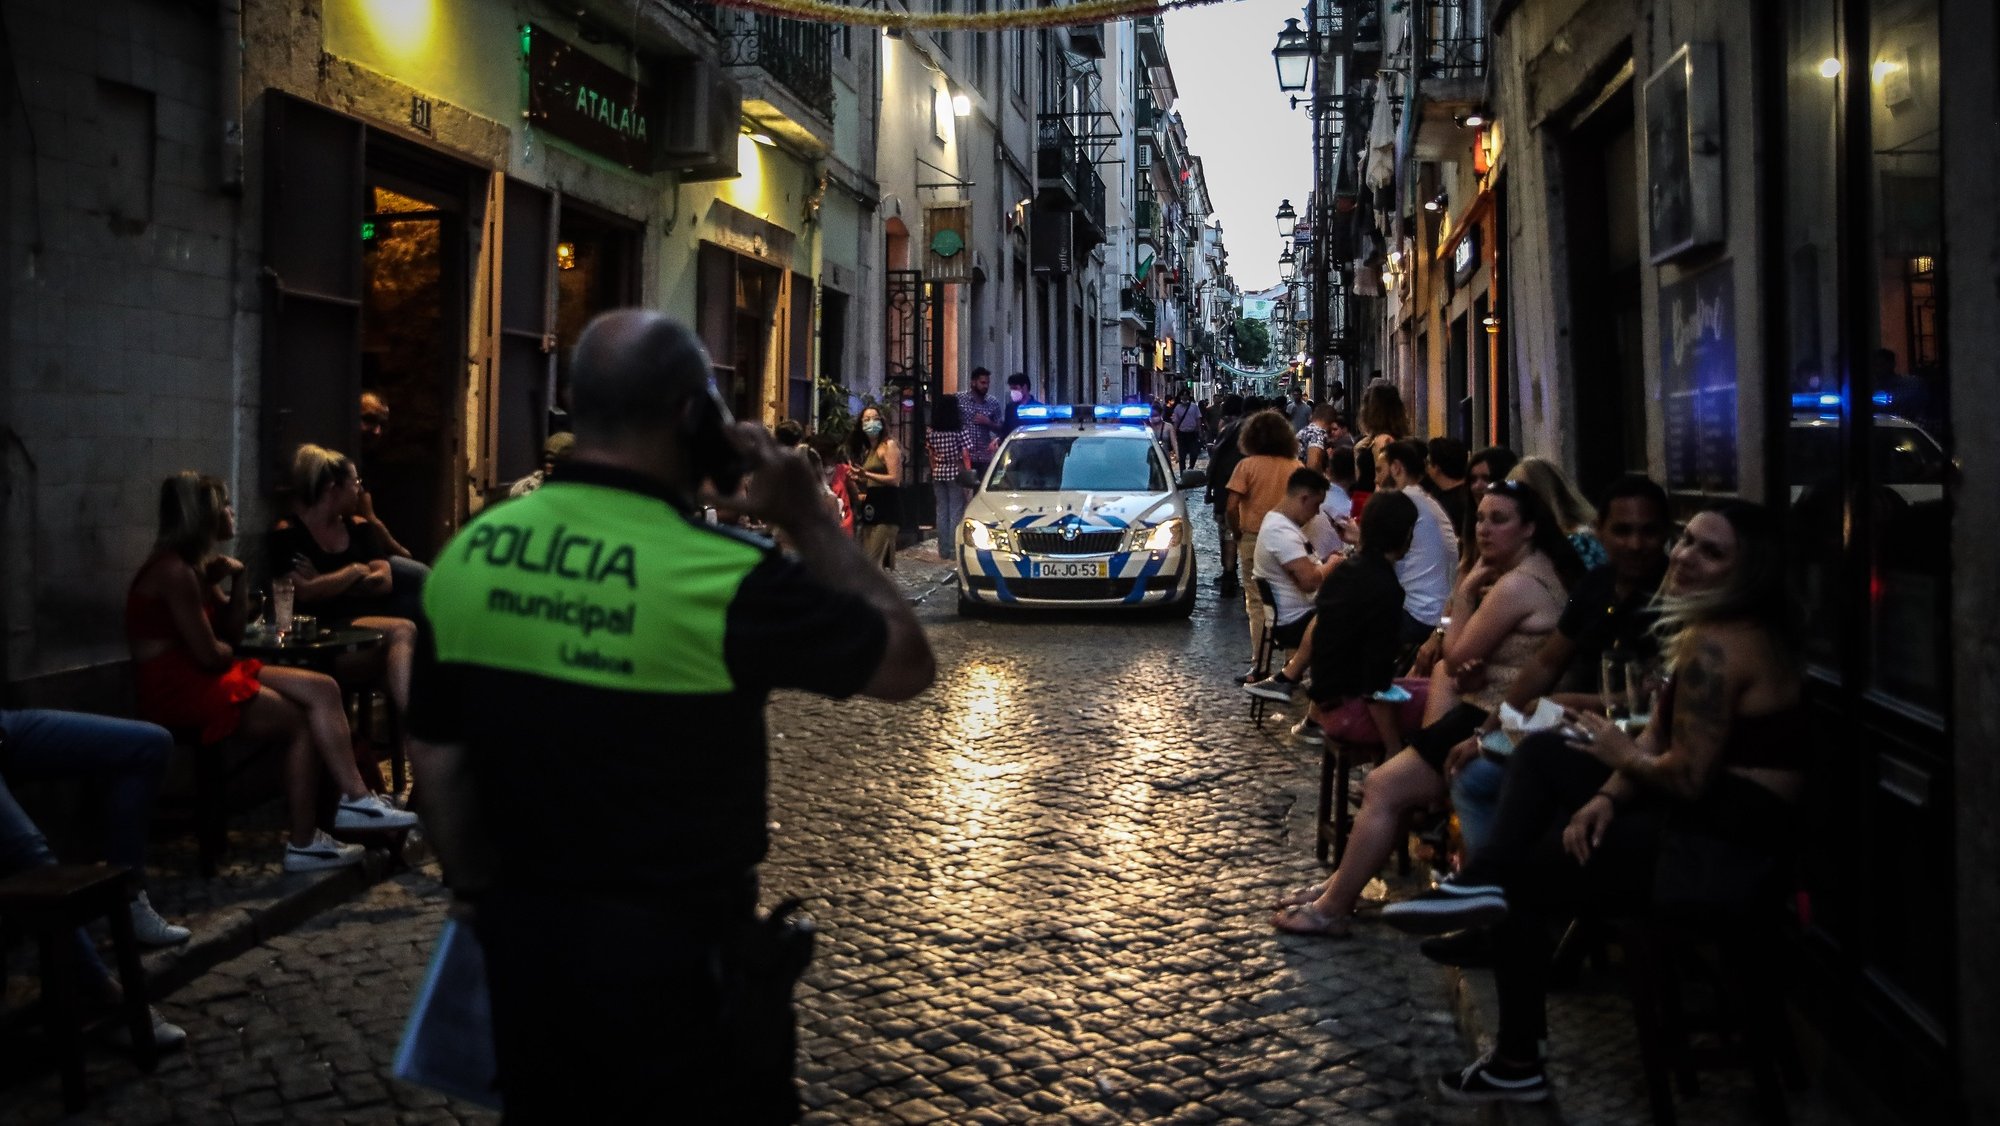 Ação de fiscalização da ASAE em parceria com a Polícia Municipal de Lisboa a estabelecimentos comerciais e restauração no âmbito das medidas de restrição da covid-19, no Bairro Alto, em Lisboa, 25 de junho de 2021. MÁRIO CRUZ/LUSA